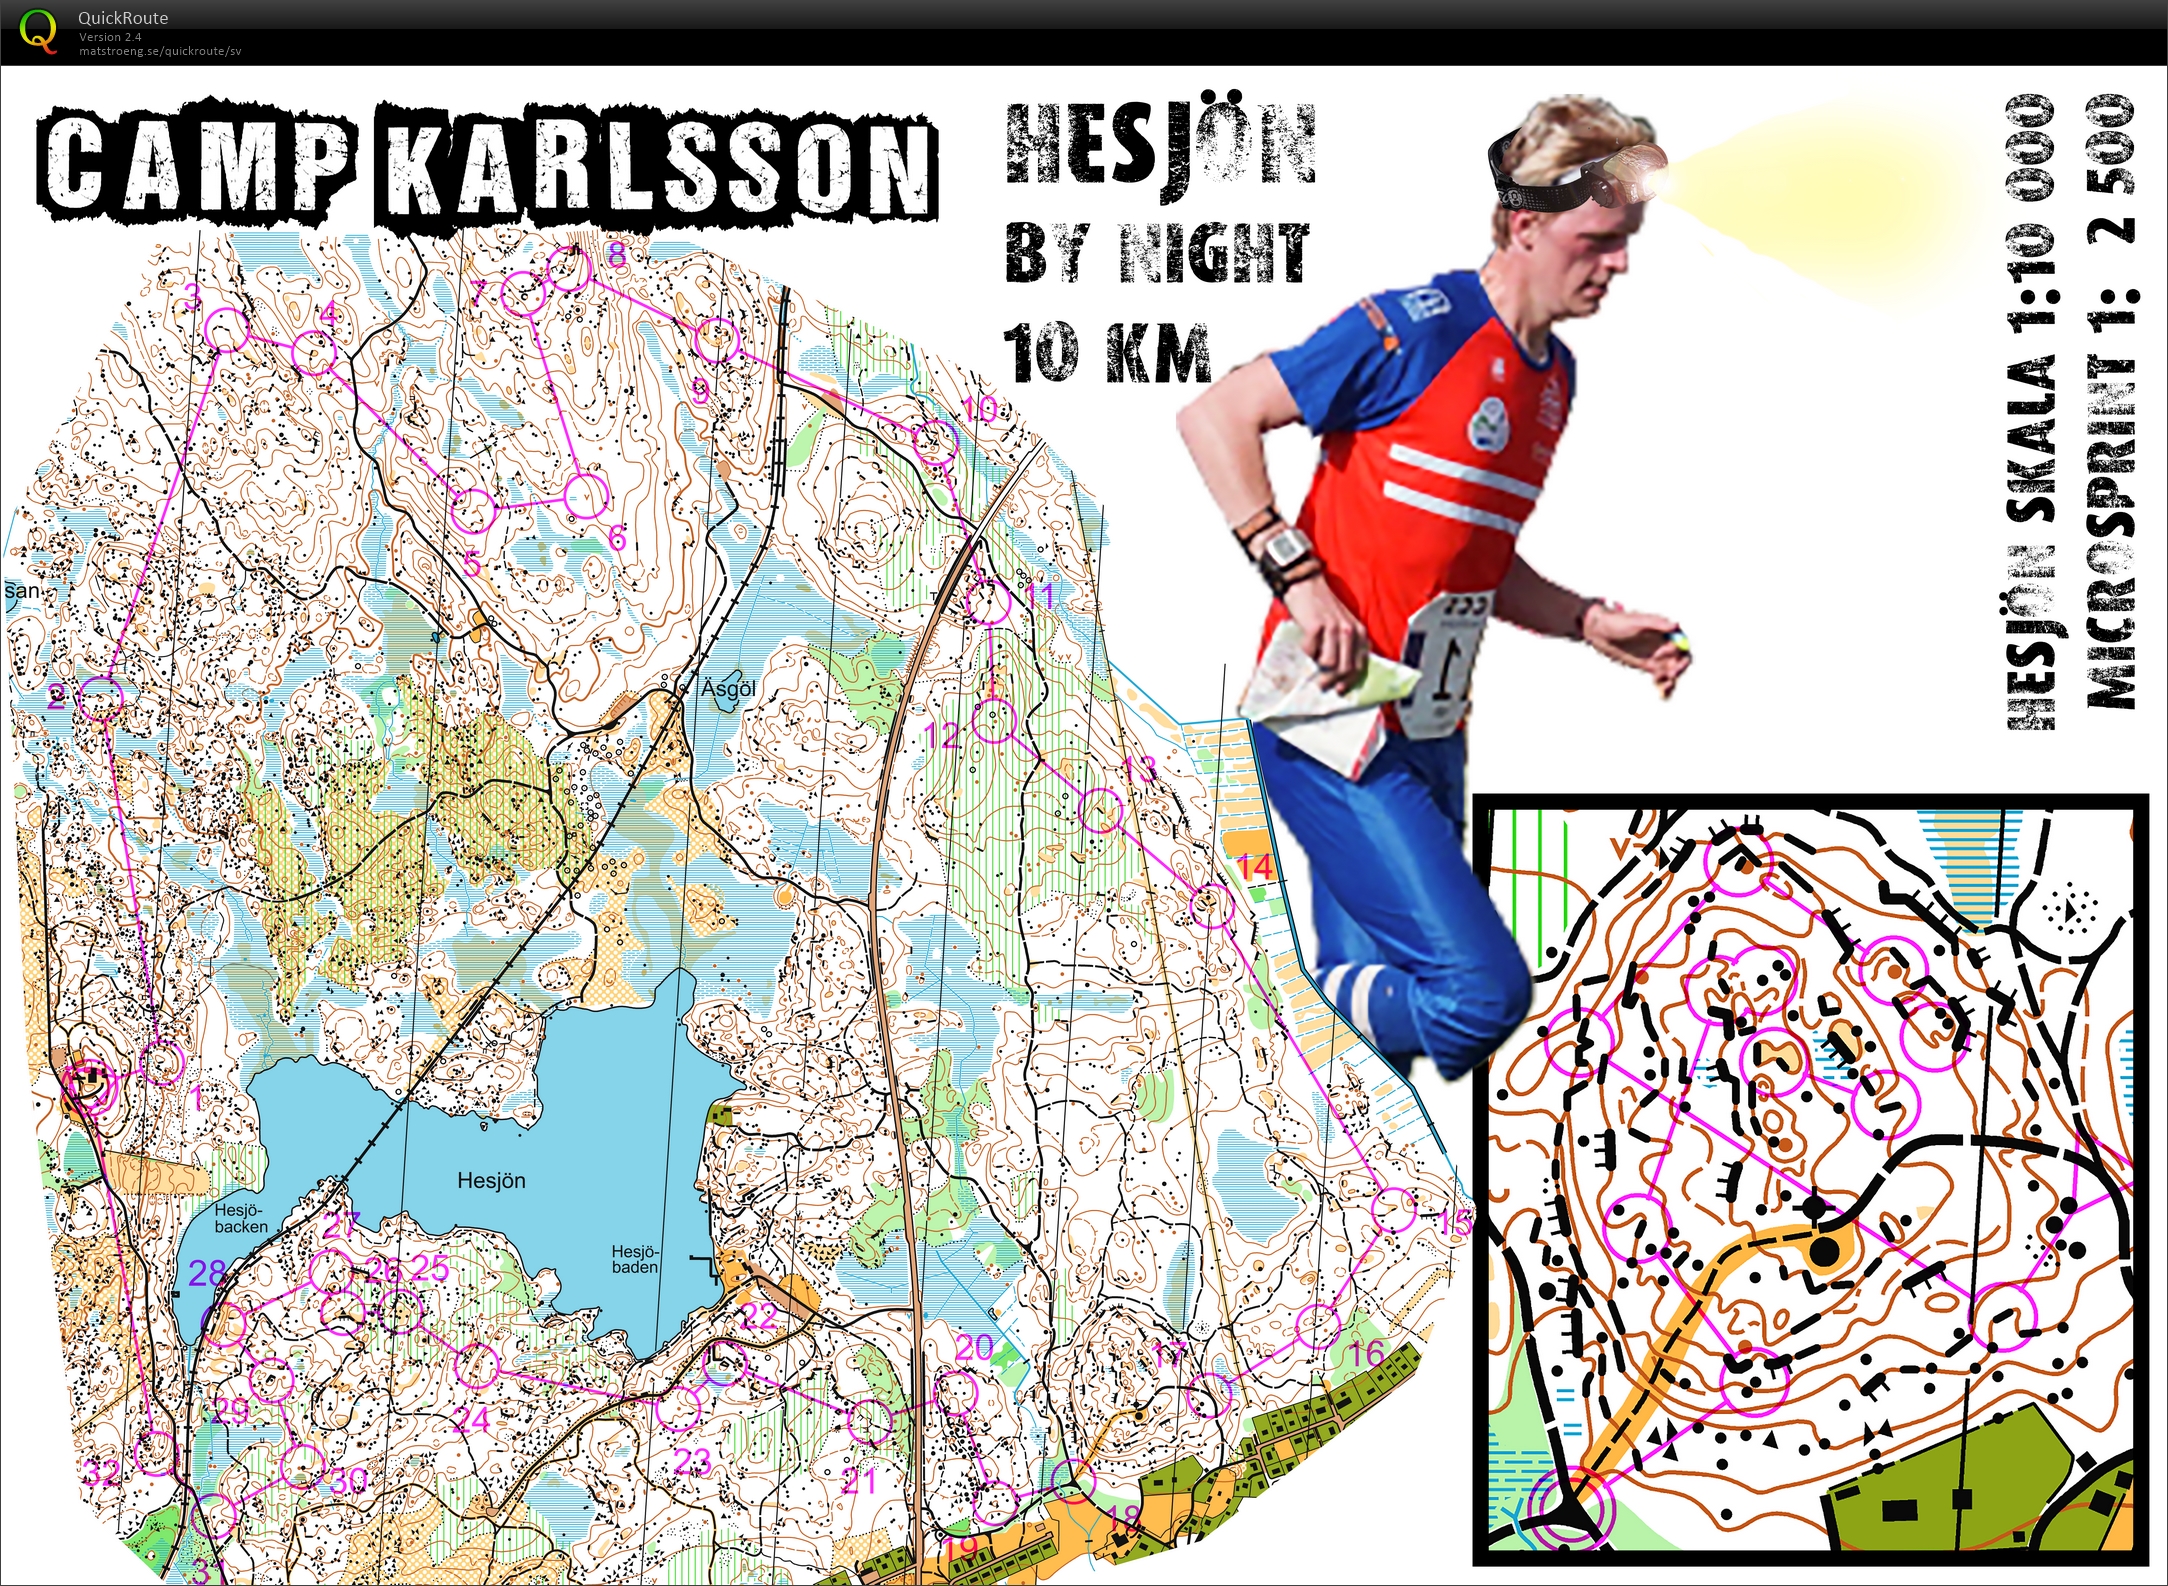 Camp Karlsson #2: Hesjön by Night (11-12-2015)